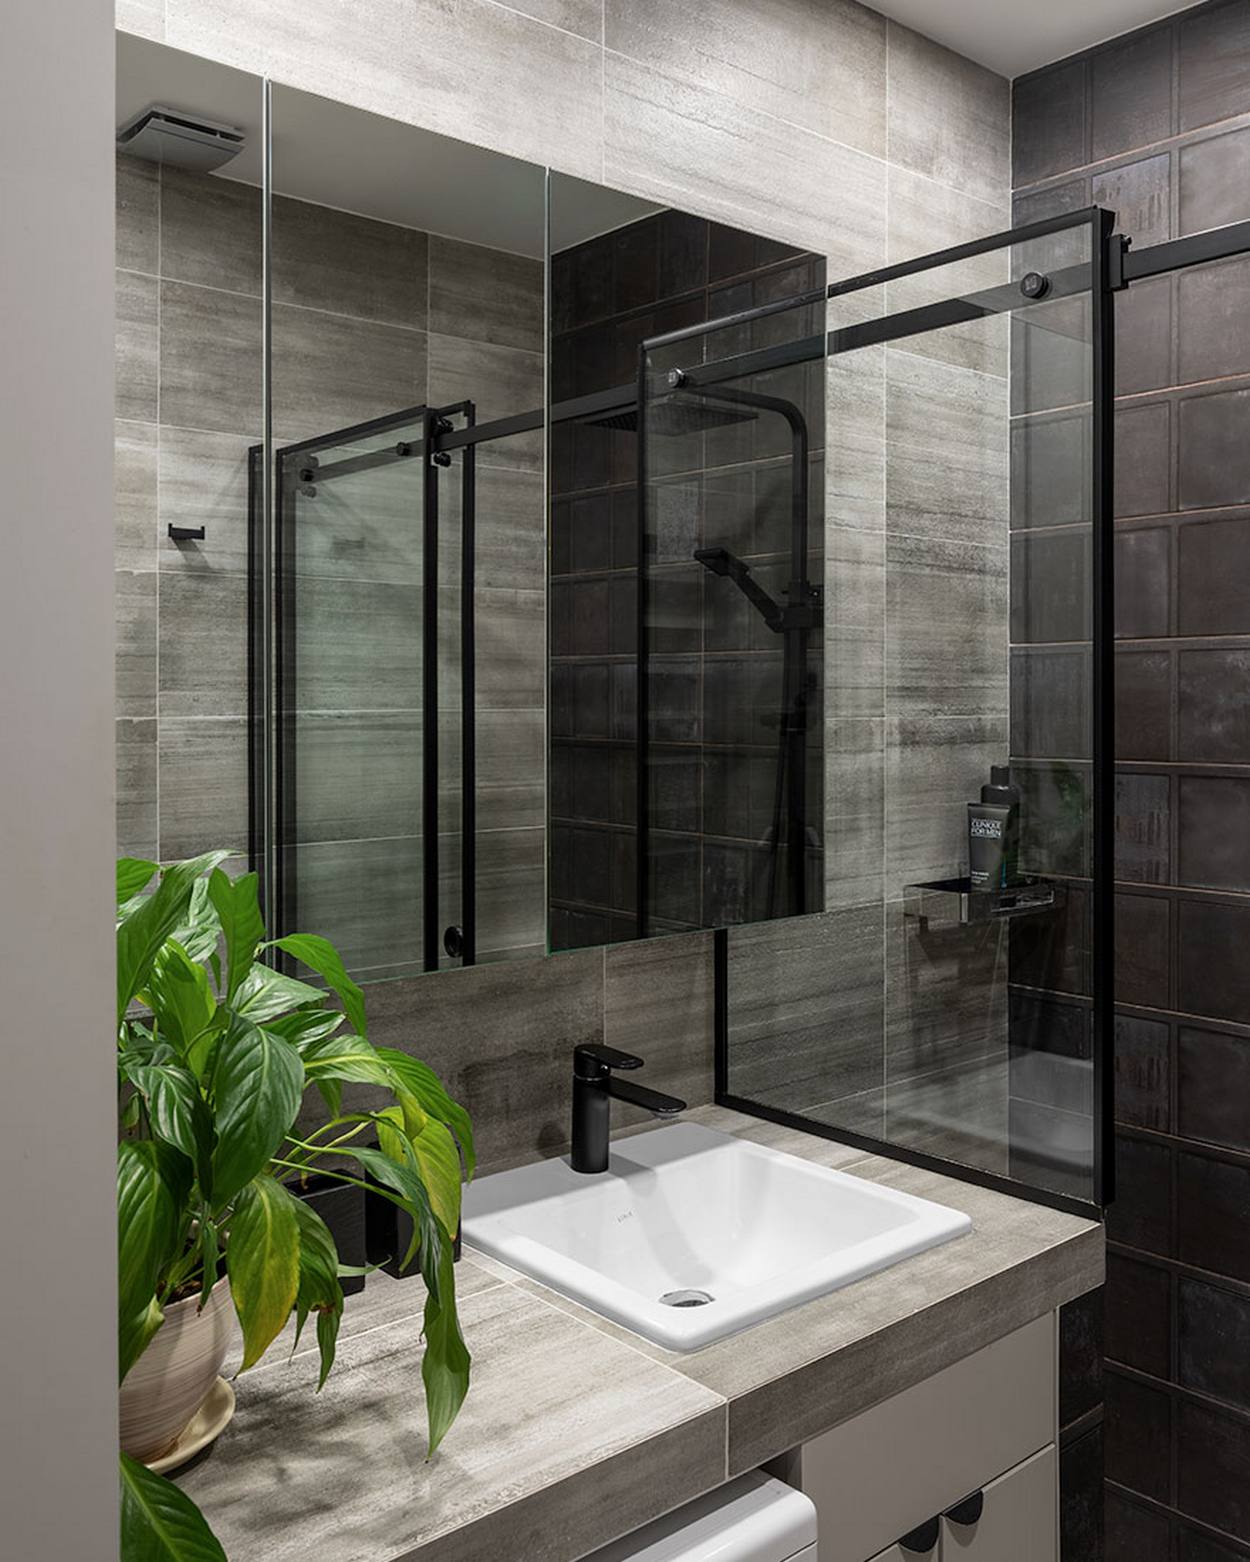 Phòng tắm sử dụng gạch ốp tường 2 tone màu xám đậm - nhạt để tạo sự tương phản nhẹ nhàng. Máy giặt tích hợp ngay bên dưới bồn rửa. Tủ lưu trữ cửa gương giúp 'nhân đôi' không gian bằng thị giác, thêm vào chậu cây cảnh tươi xanh cho căn phòng 'mềm mại', sinh động hơn.